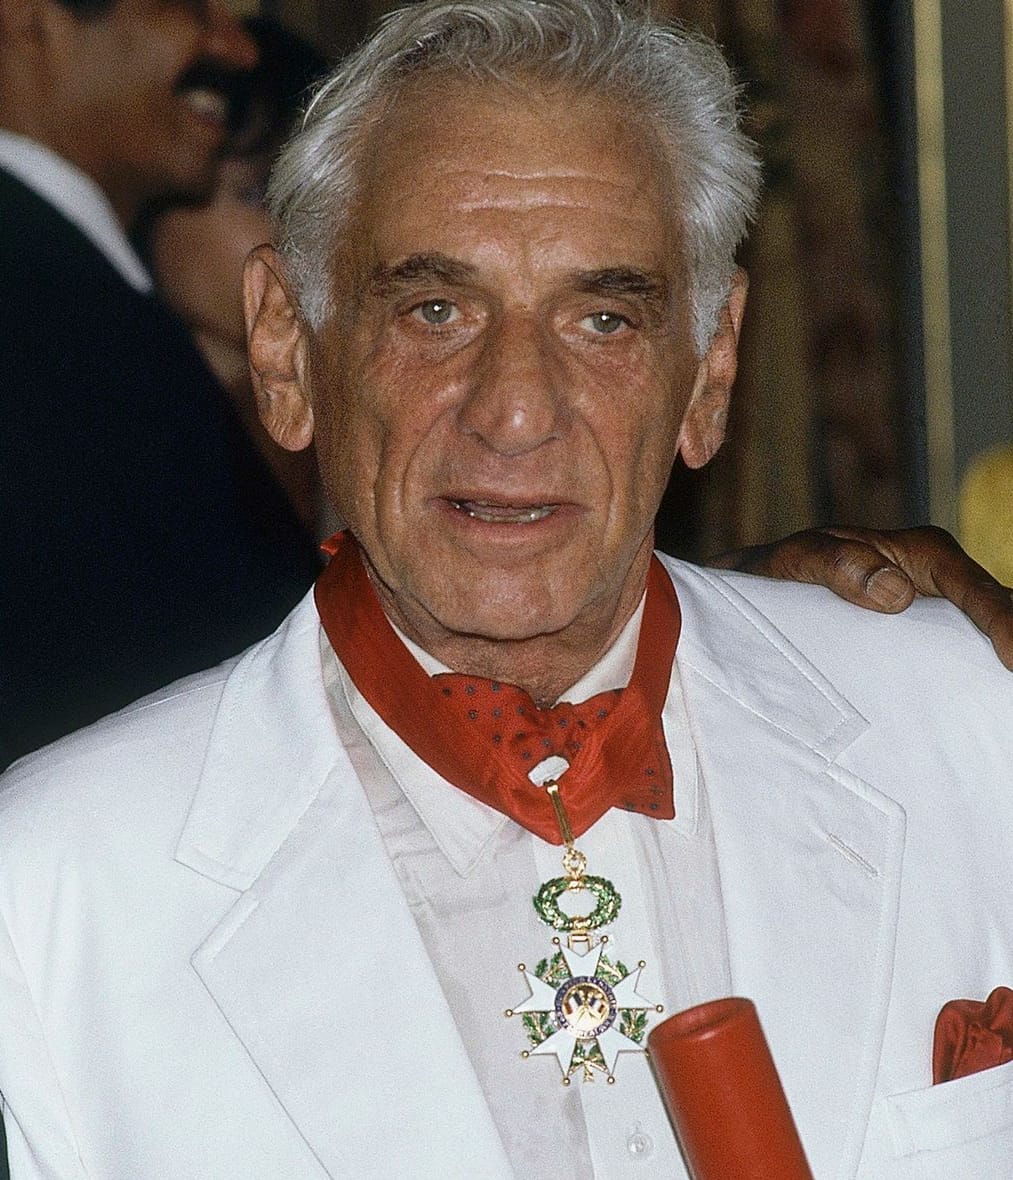 Leonard Bernstein in 1986